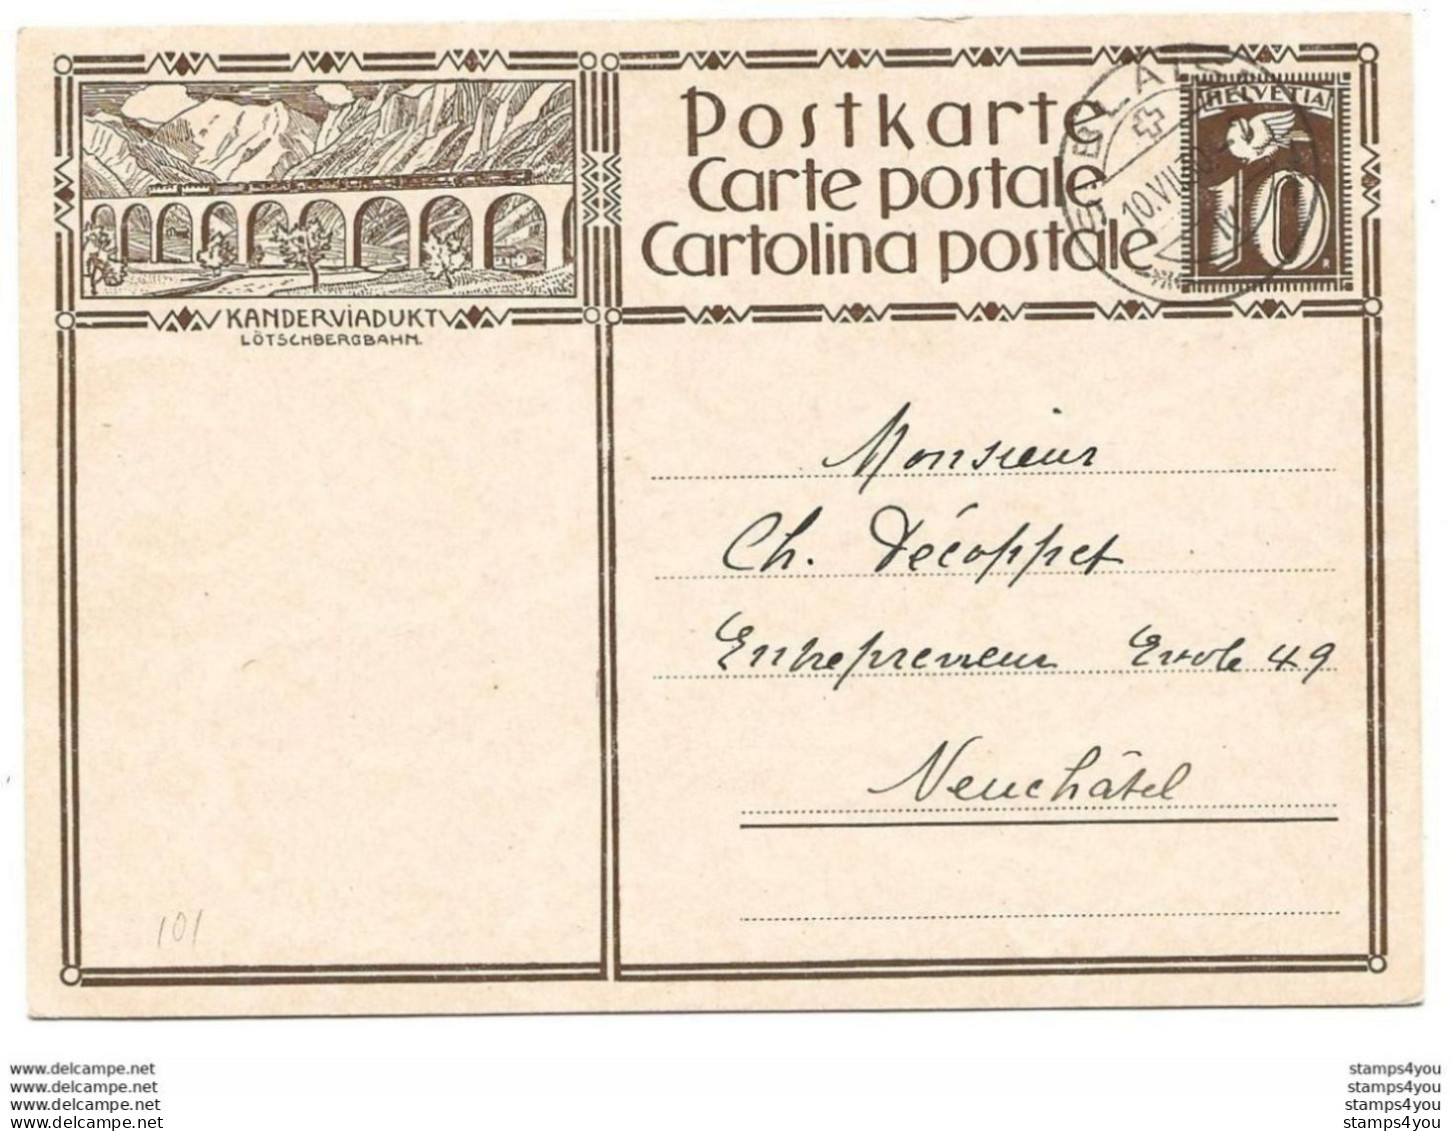 283 - 54 - Entier Postal Avec Illustration "Kanderviadukt" Cachet à Date 1930 - Ganzsachen